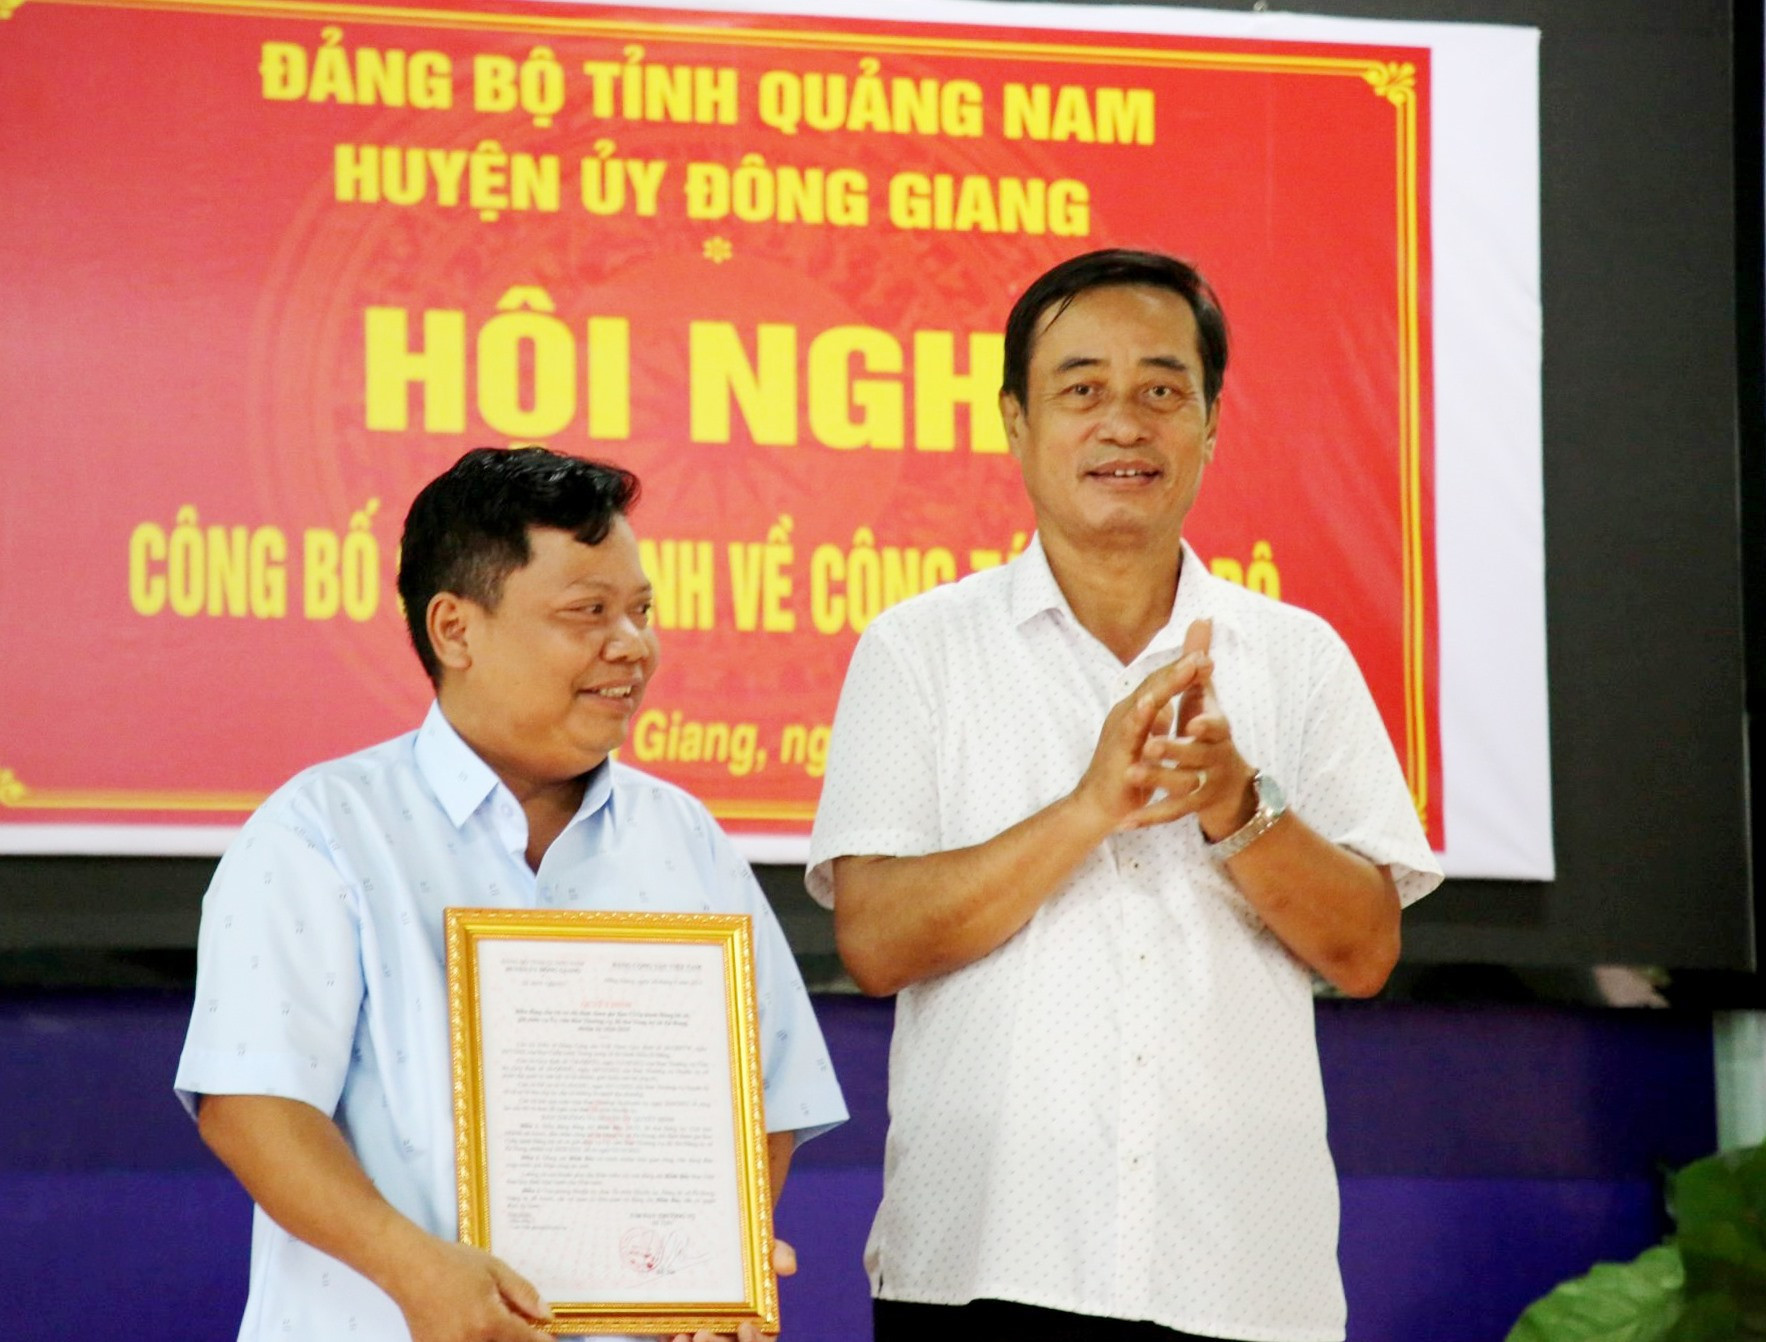 Bí thư Huyện ủy Đông Giang - ông Đỗ Tài (bên phải) trao quyết định cho ông Hôih Bảy giữ chức danh Bí thư Đảng ủy xã Zà Hung. Ảnh: C.T